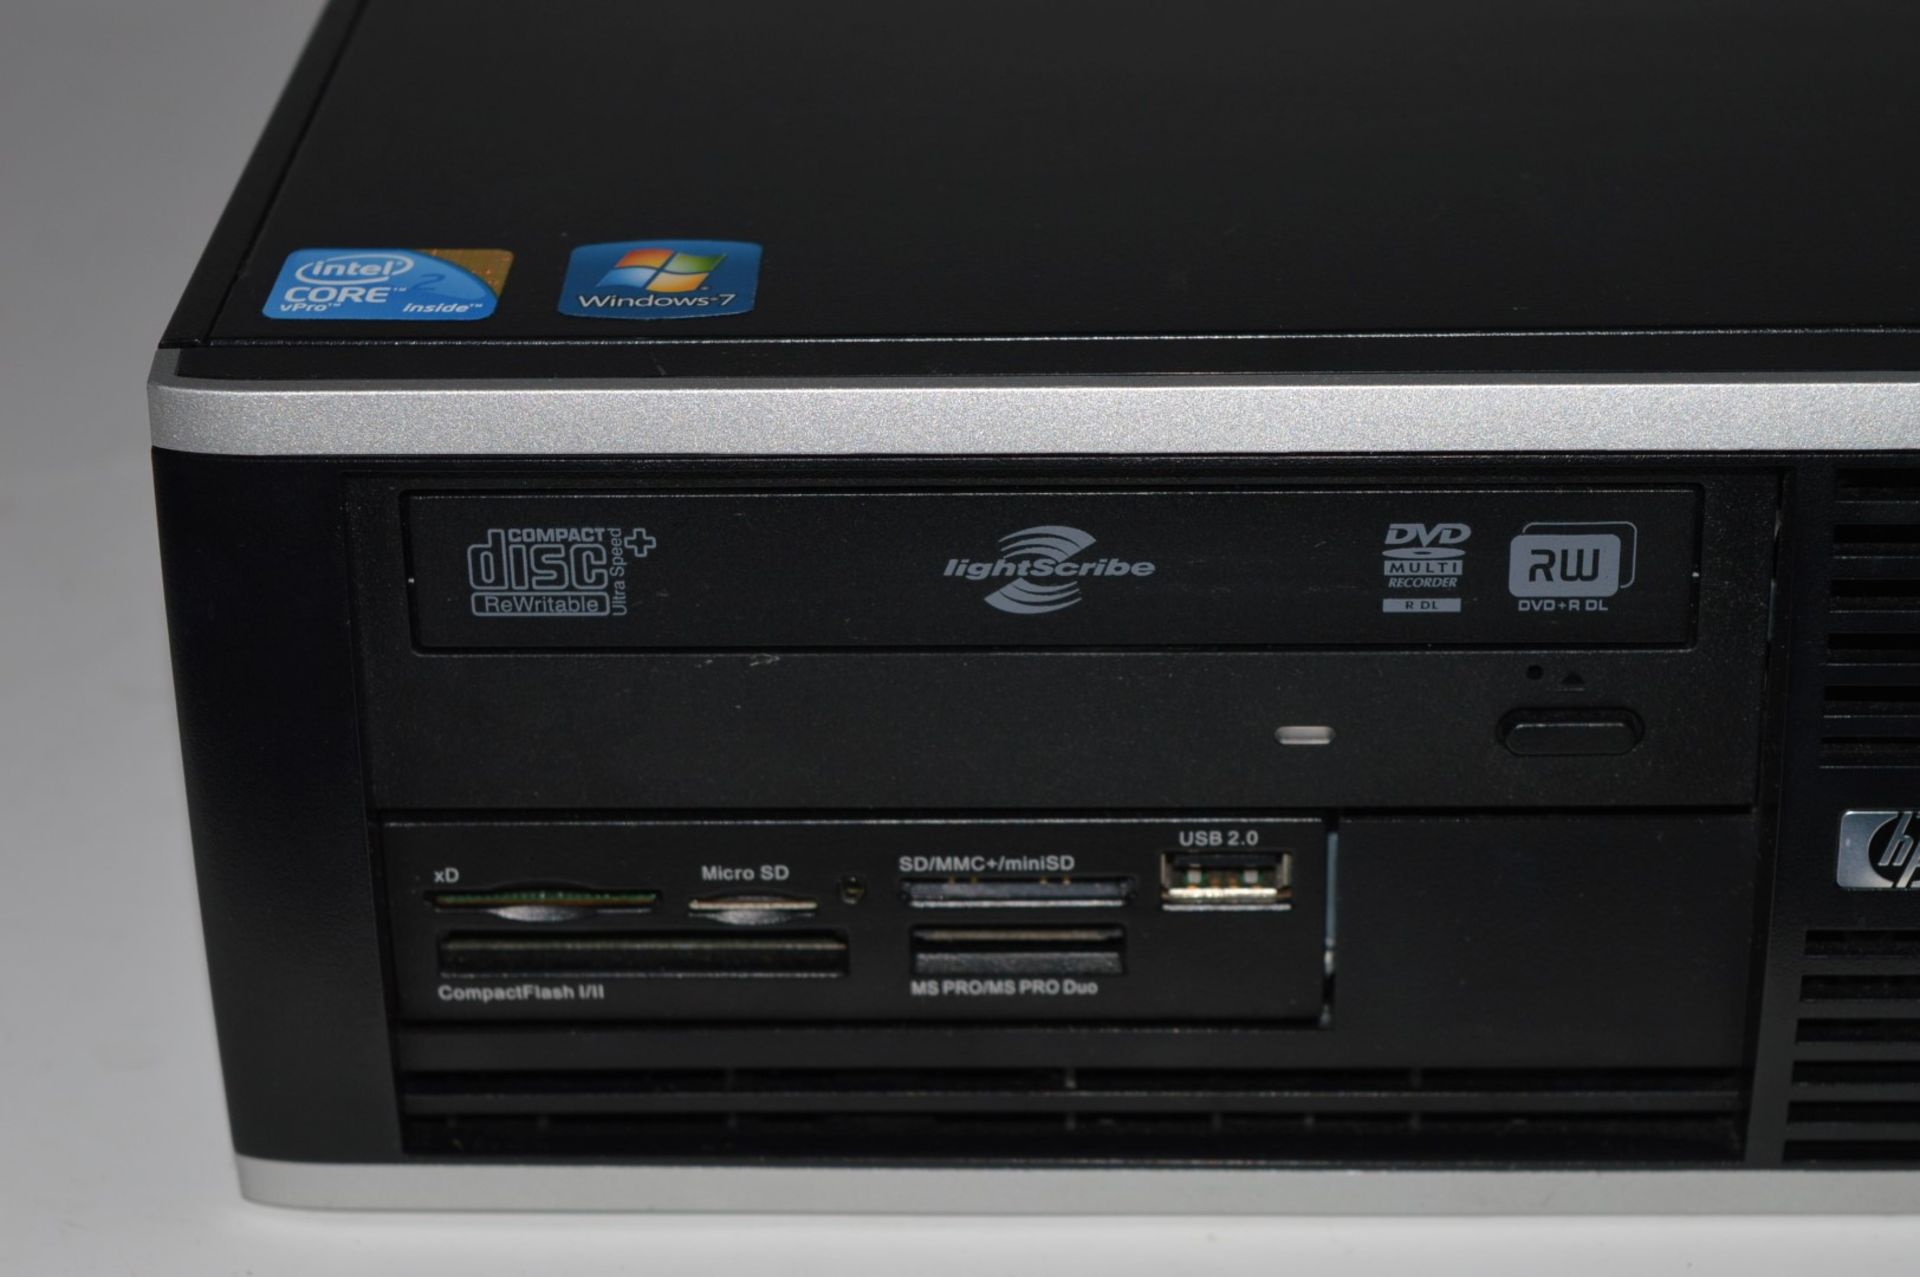 1 x Hewlett Packard 8000 Elite Small Form Factor Desktop Computer - Features an Intel Core2 3ghz - Image 2 of 5